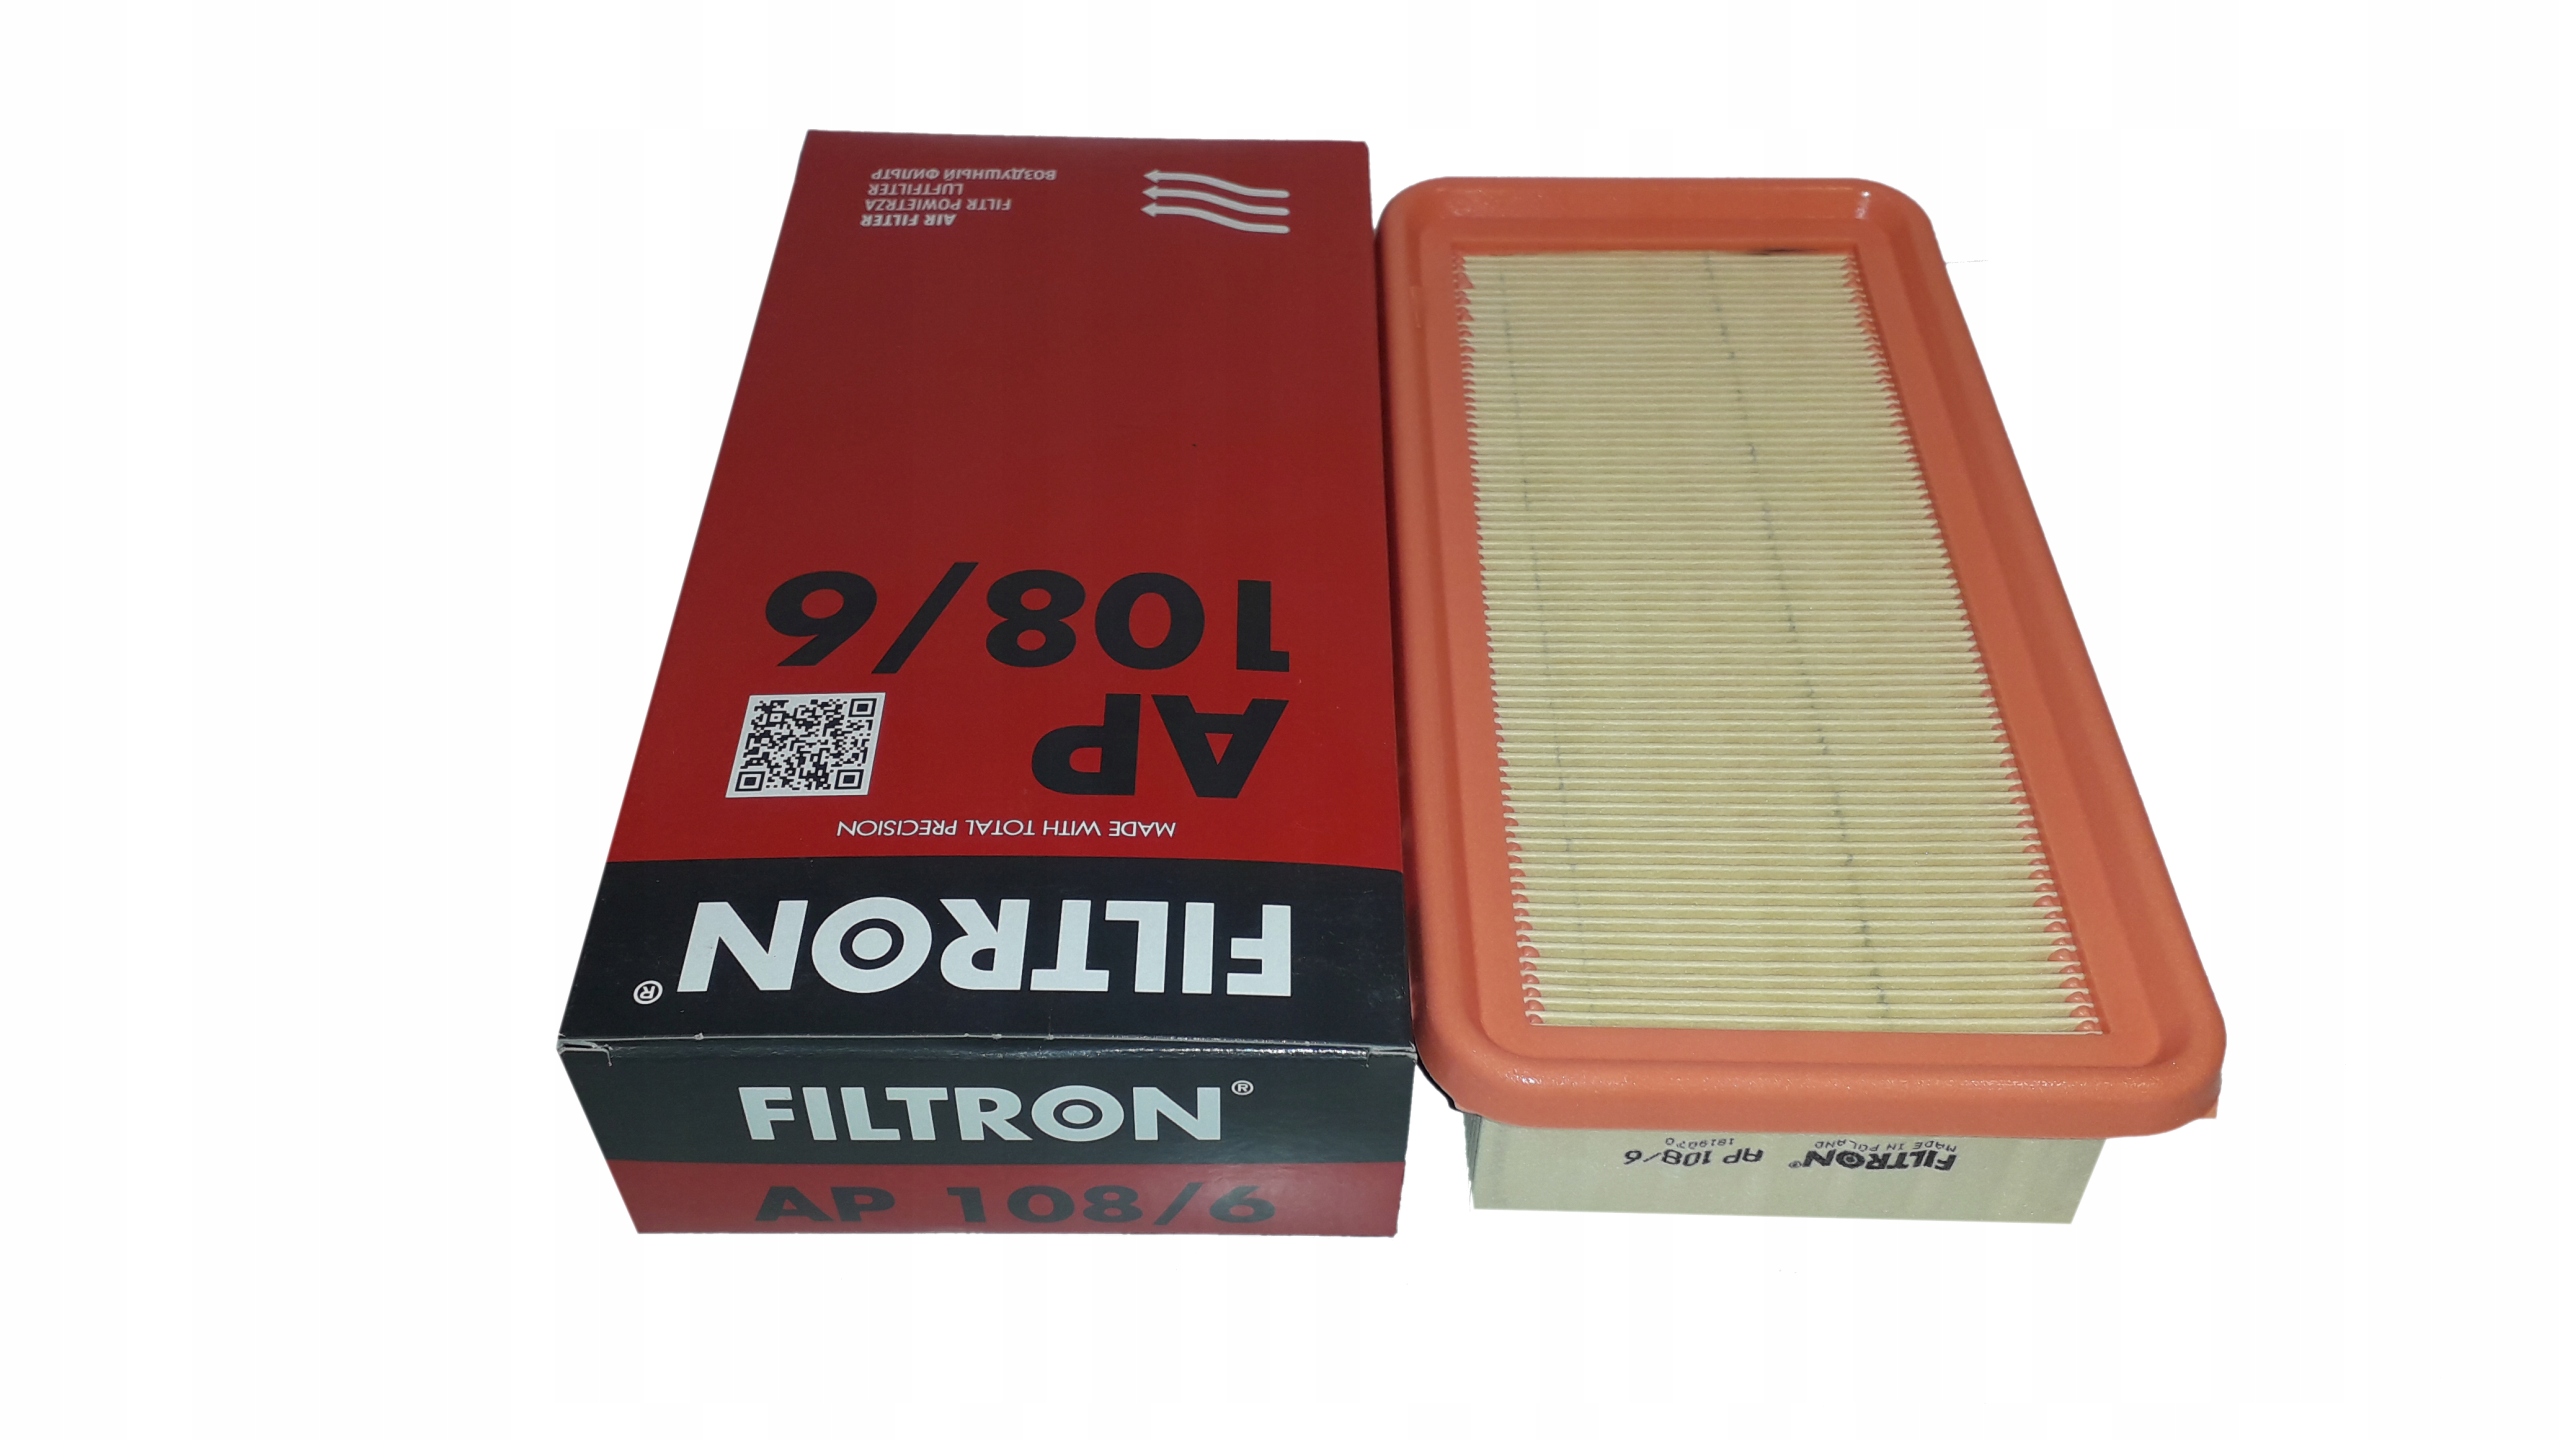 Воздушный фильтр FILTRON ap108. FILTRON ap032 фильтр воздушный. FILTRON фильтр воздушный ap174. Фильтр воздушный FILTRON ap140.